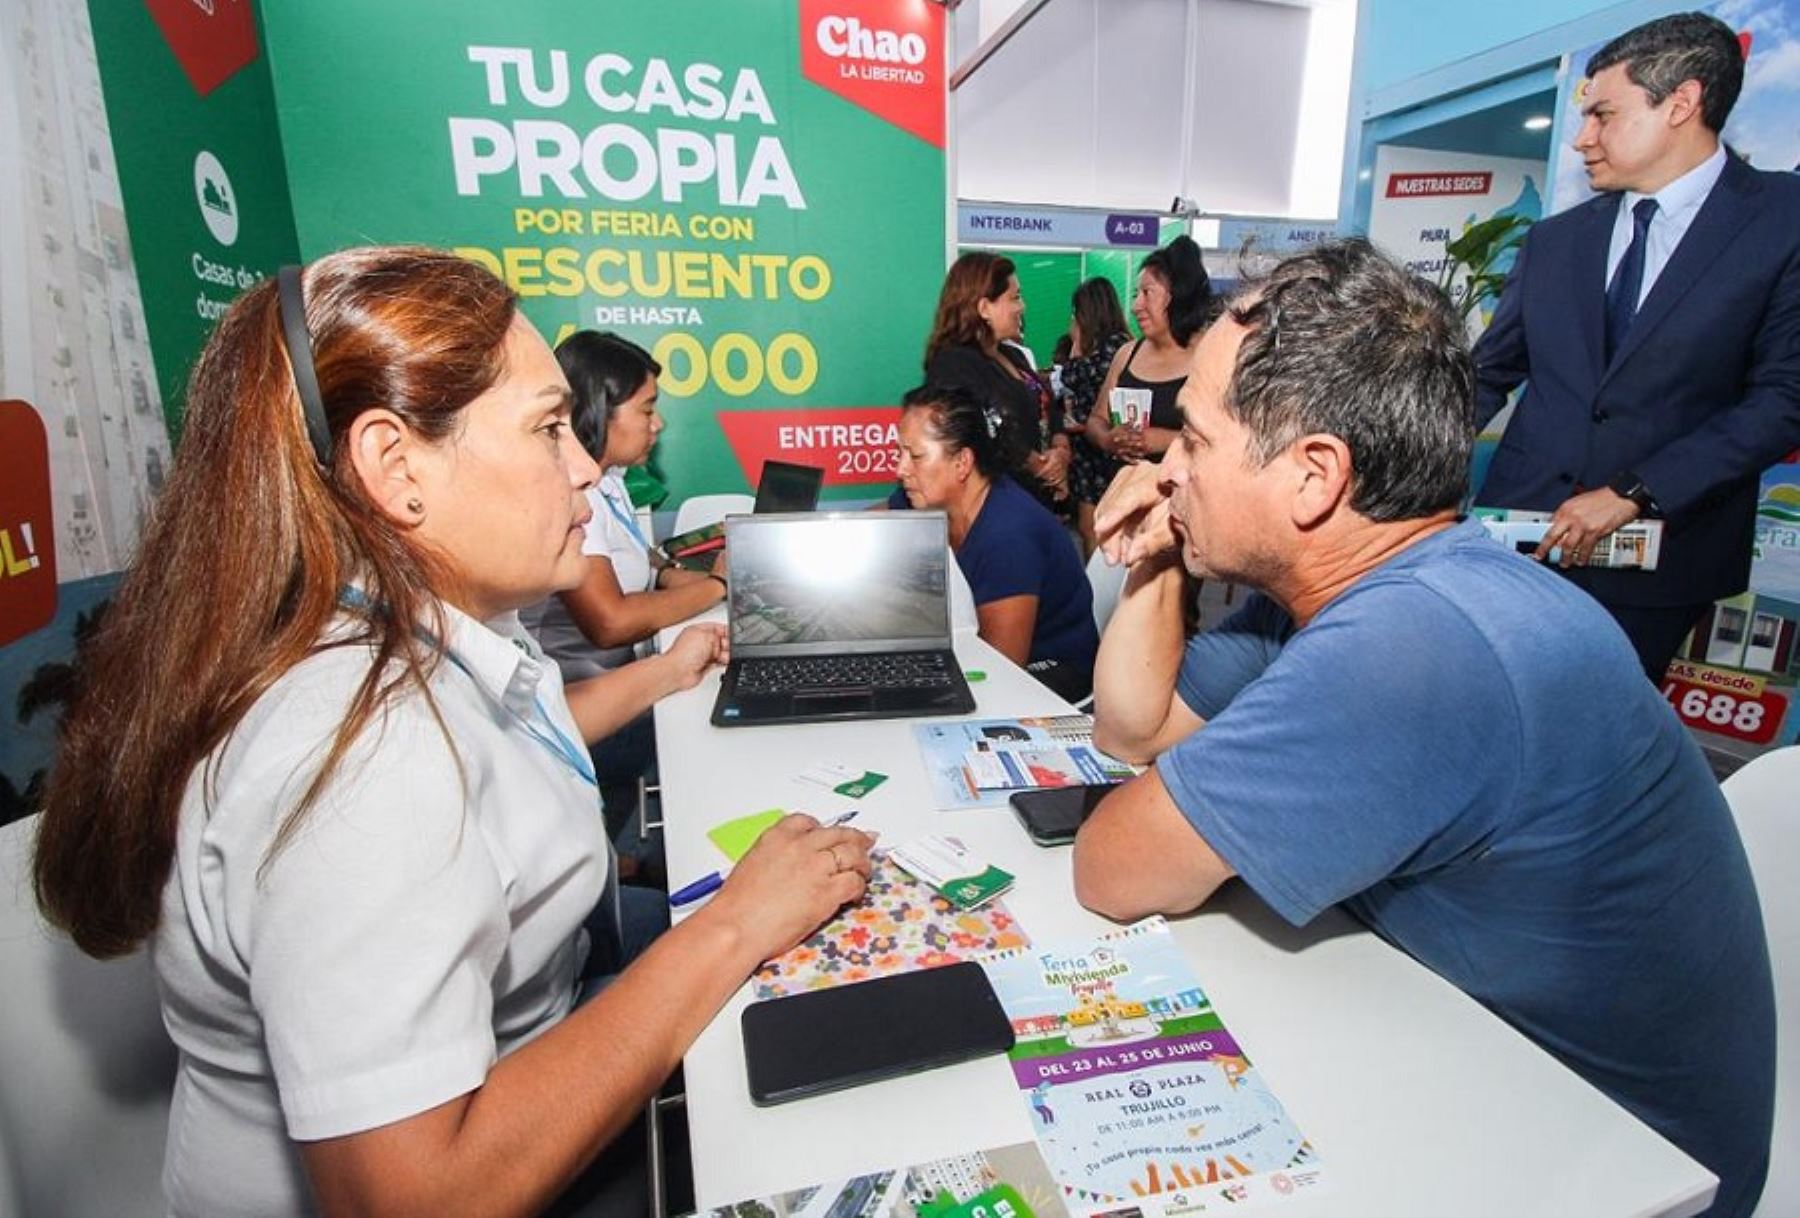 A fin de impulsar el cierre de brechas habitacionales, se desarrolla en Trujillo la Feria Mivivienda 2023, del 23 al 25 de junio, a cargo del Fondo Mivivienda, empresa adscrita al Ministerio de Vivienda, Construcción y Saneamiento